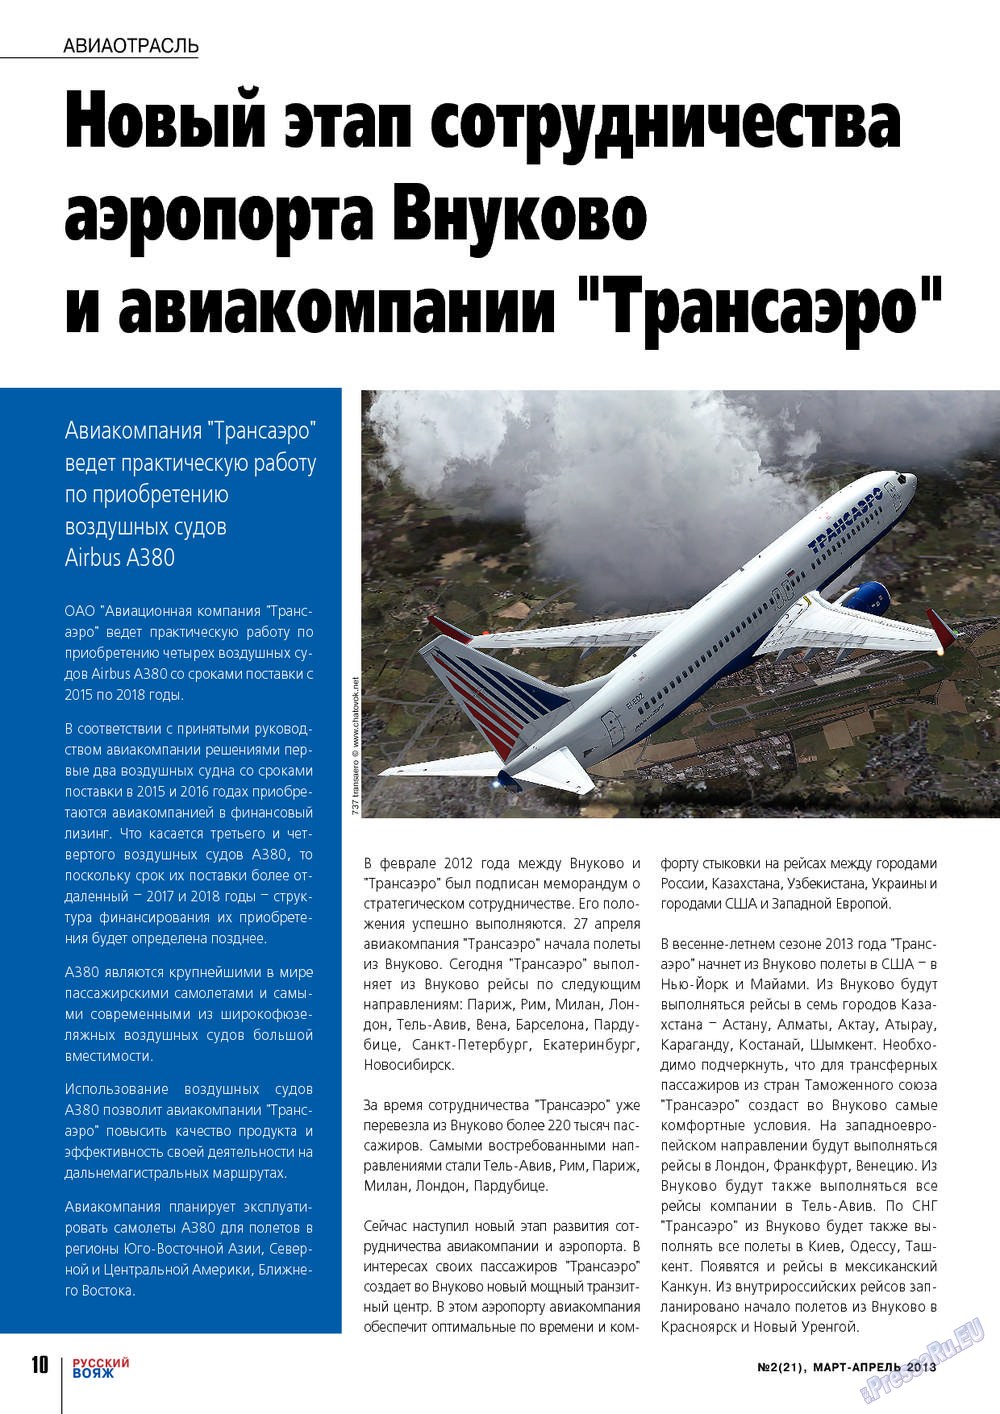 Русский вояж (журнал). 2013 год, номер 21, стр. 10